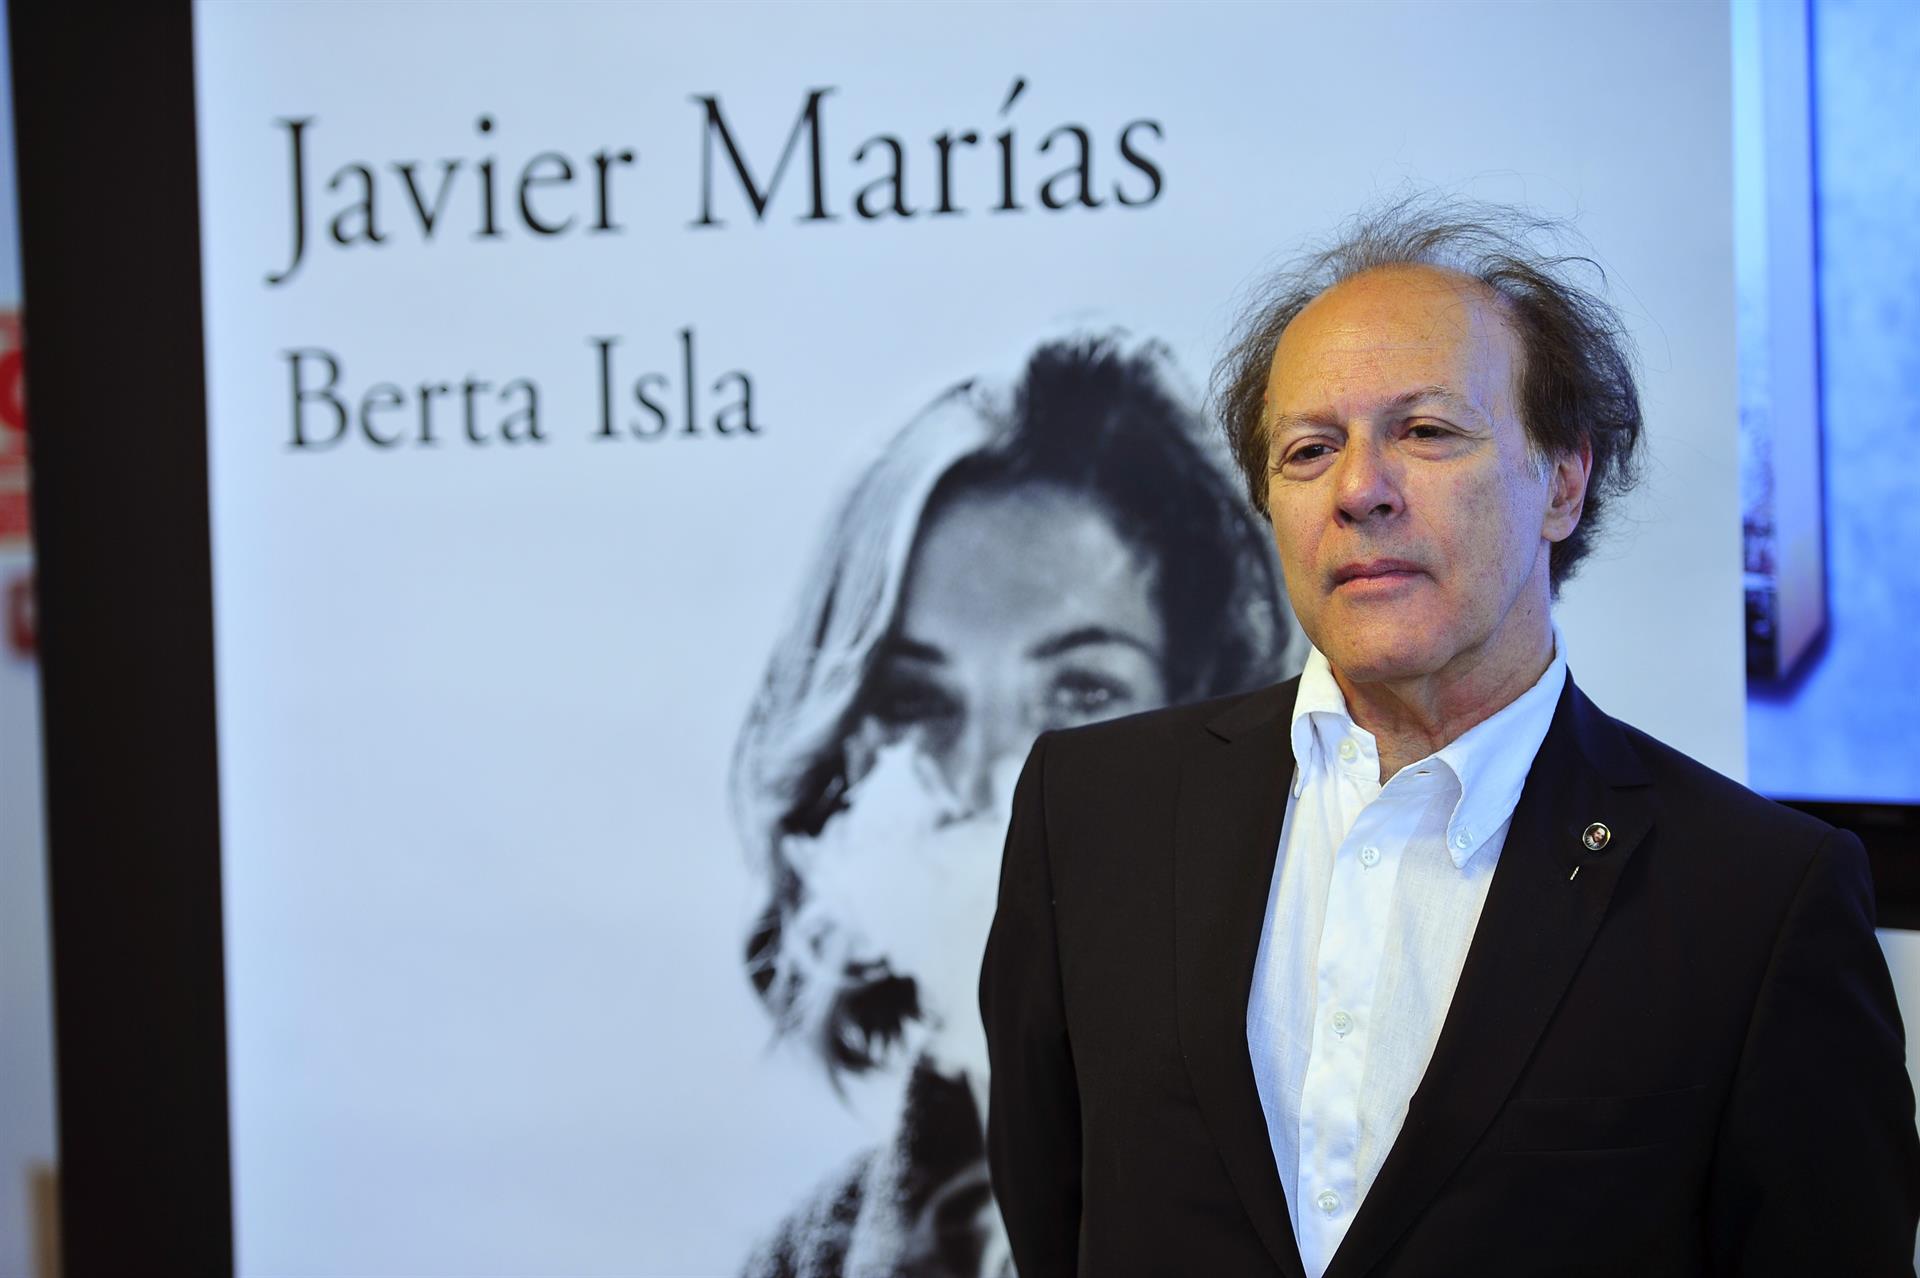 En una imagen de archivo el escritor Javier Marías durante la presentación de su novela "Berta Isla", en julio de 2017. EFE/Diego Pérez Cabezas